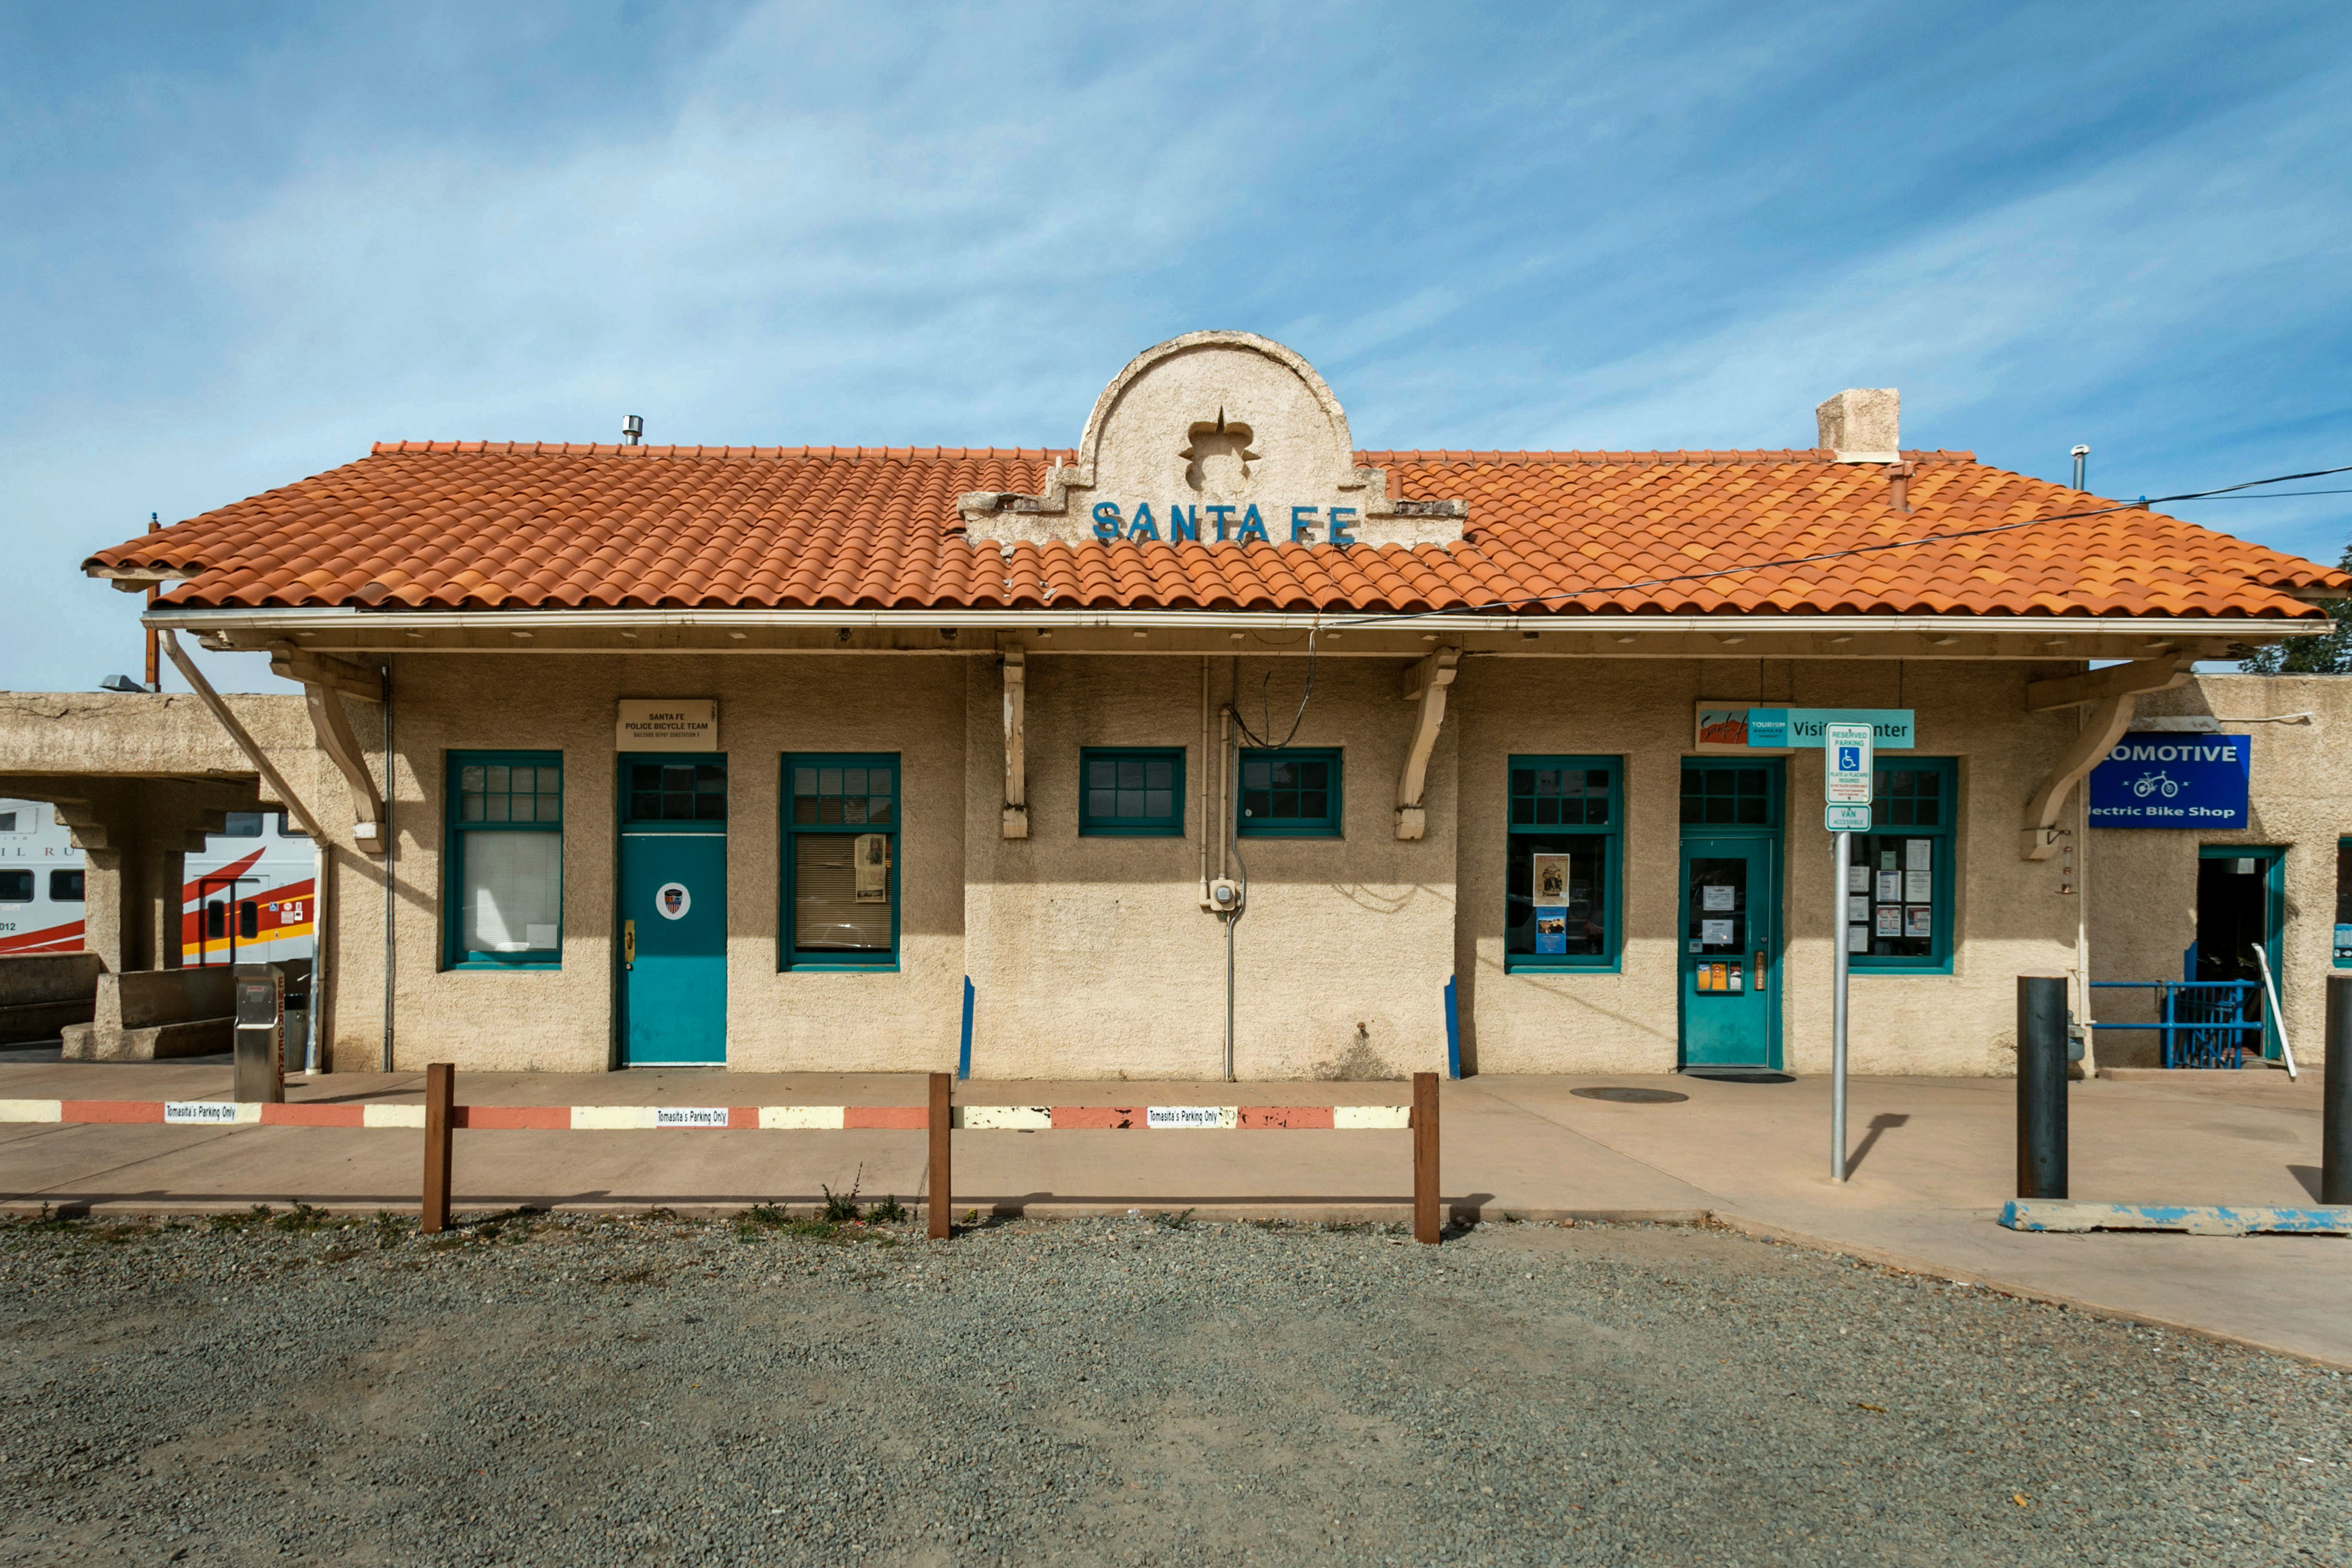 Santa Fe Depot Rail Runner Station, Santa Fe, New Mexico